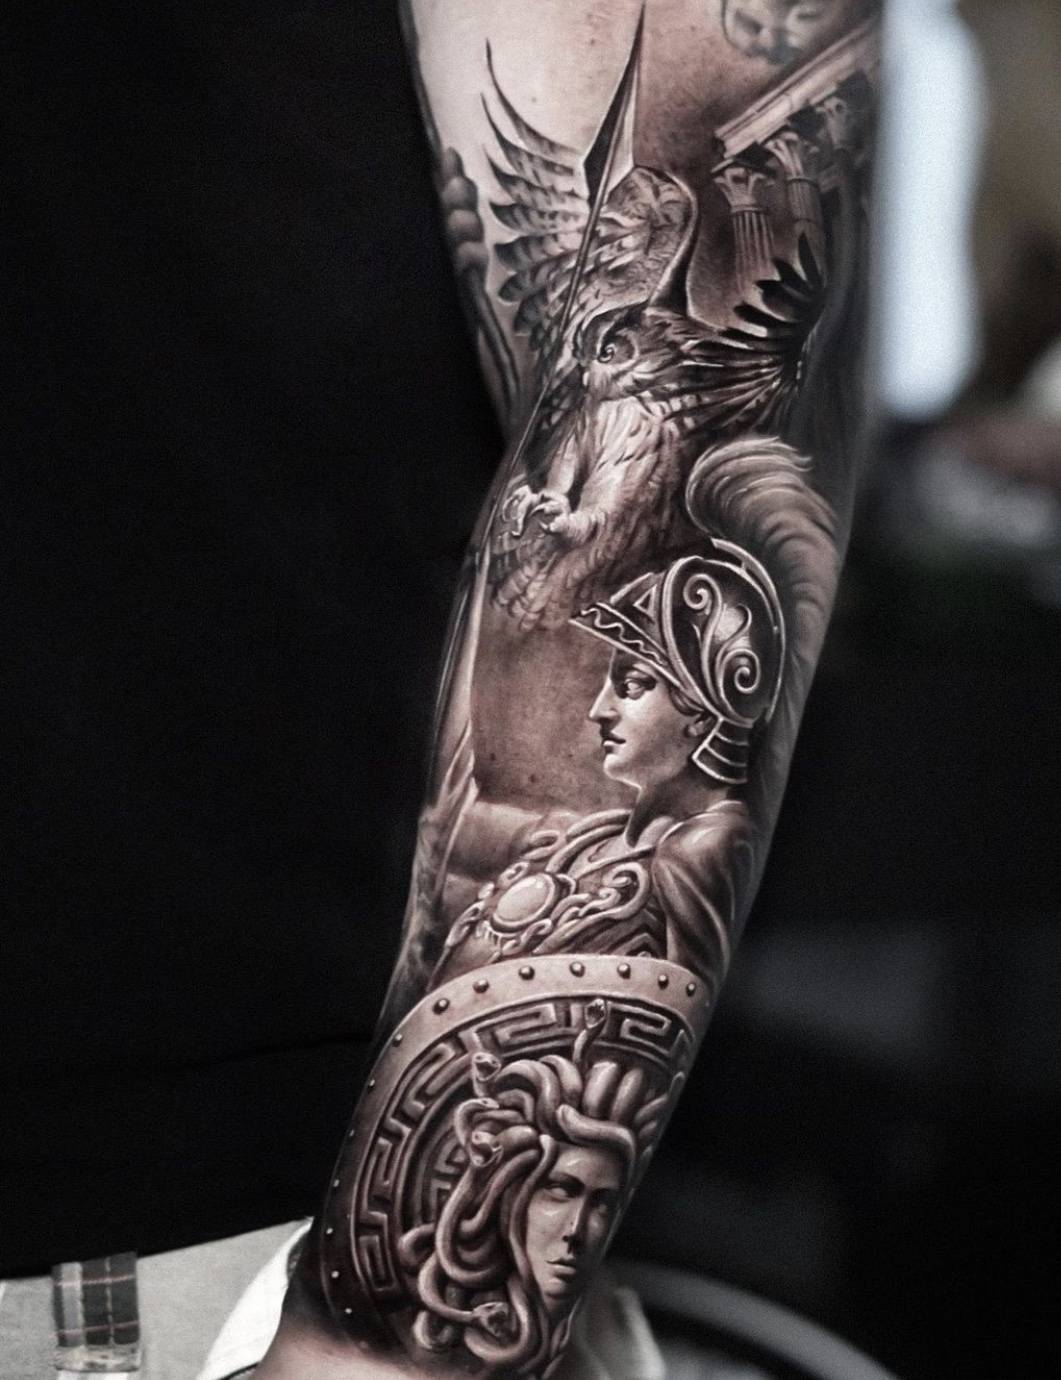 上海由龙纹身写实大手臂纹身写实小臂纹身图案分享